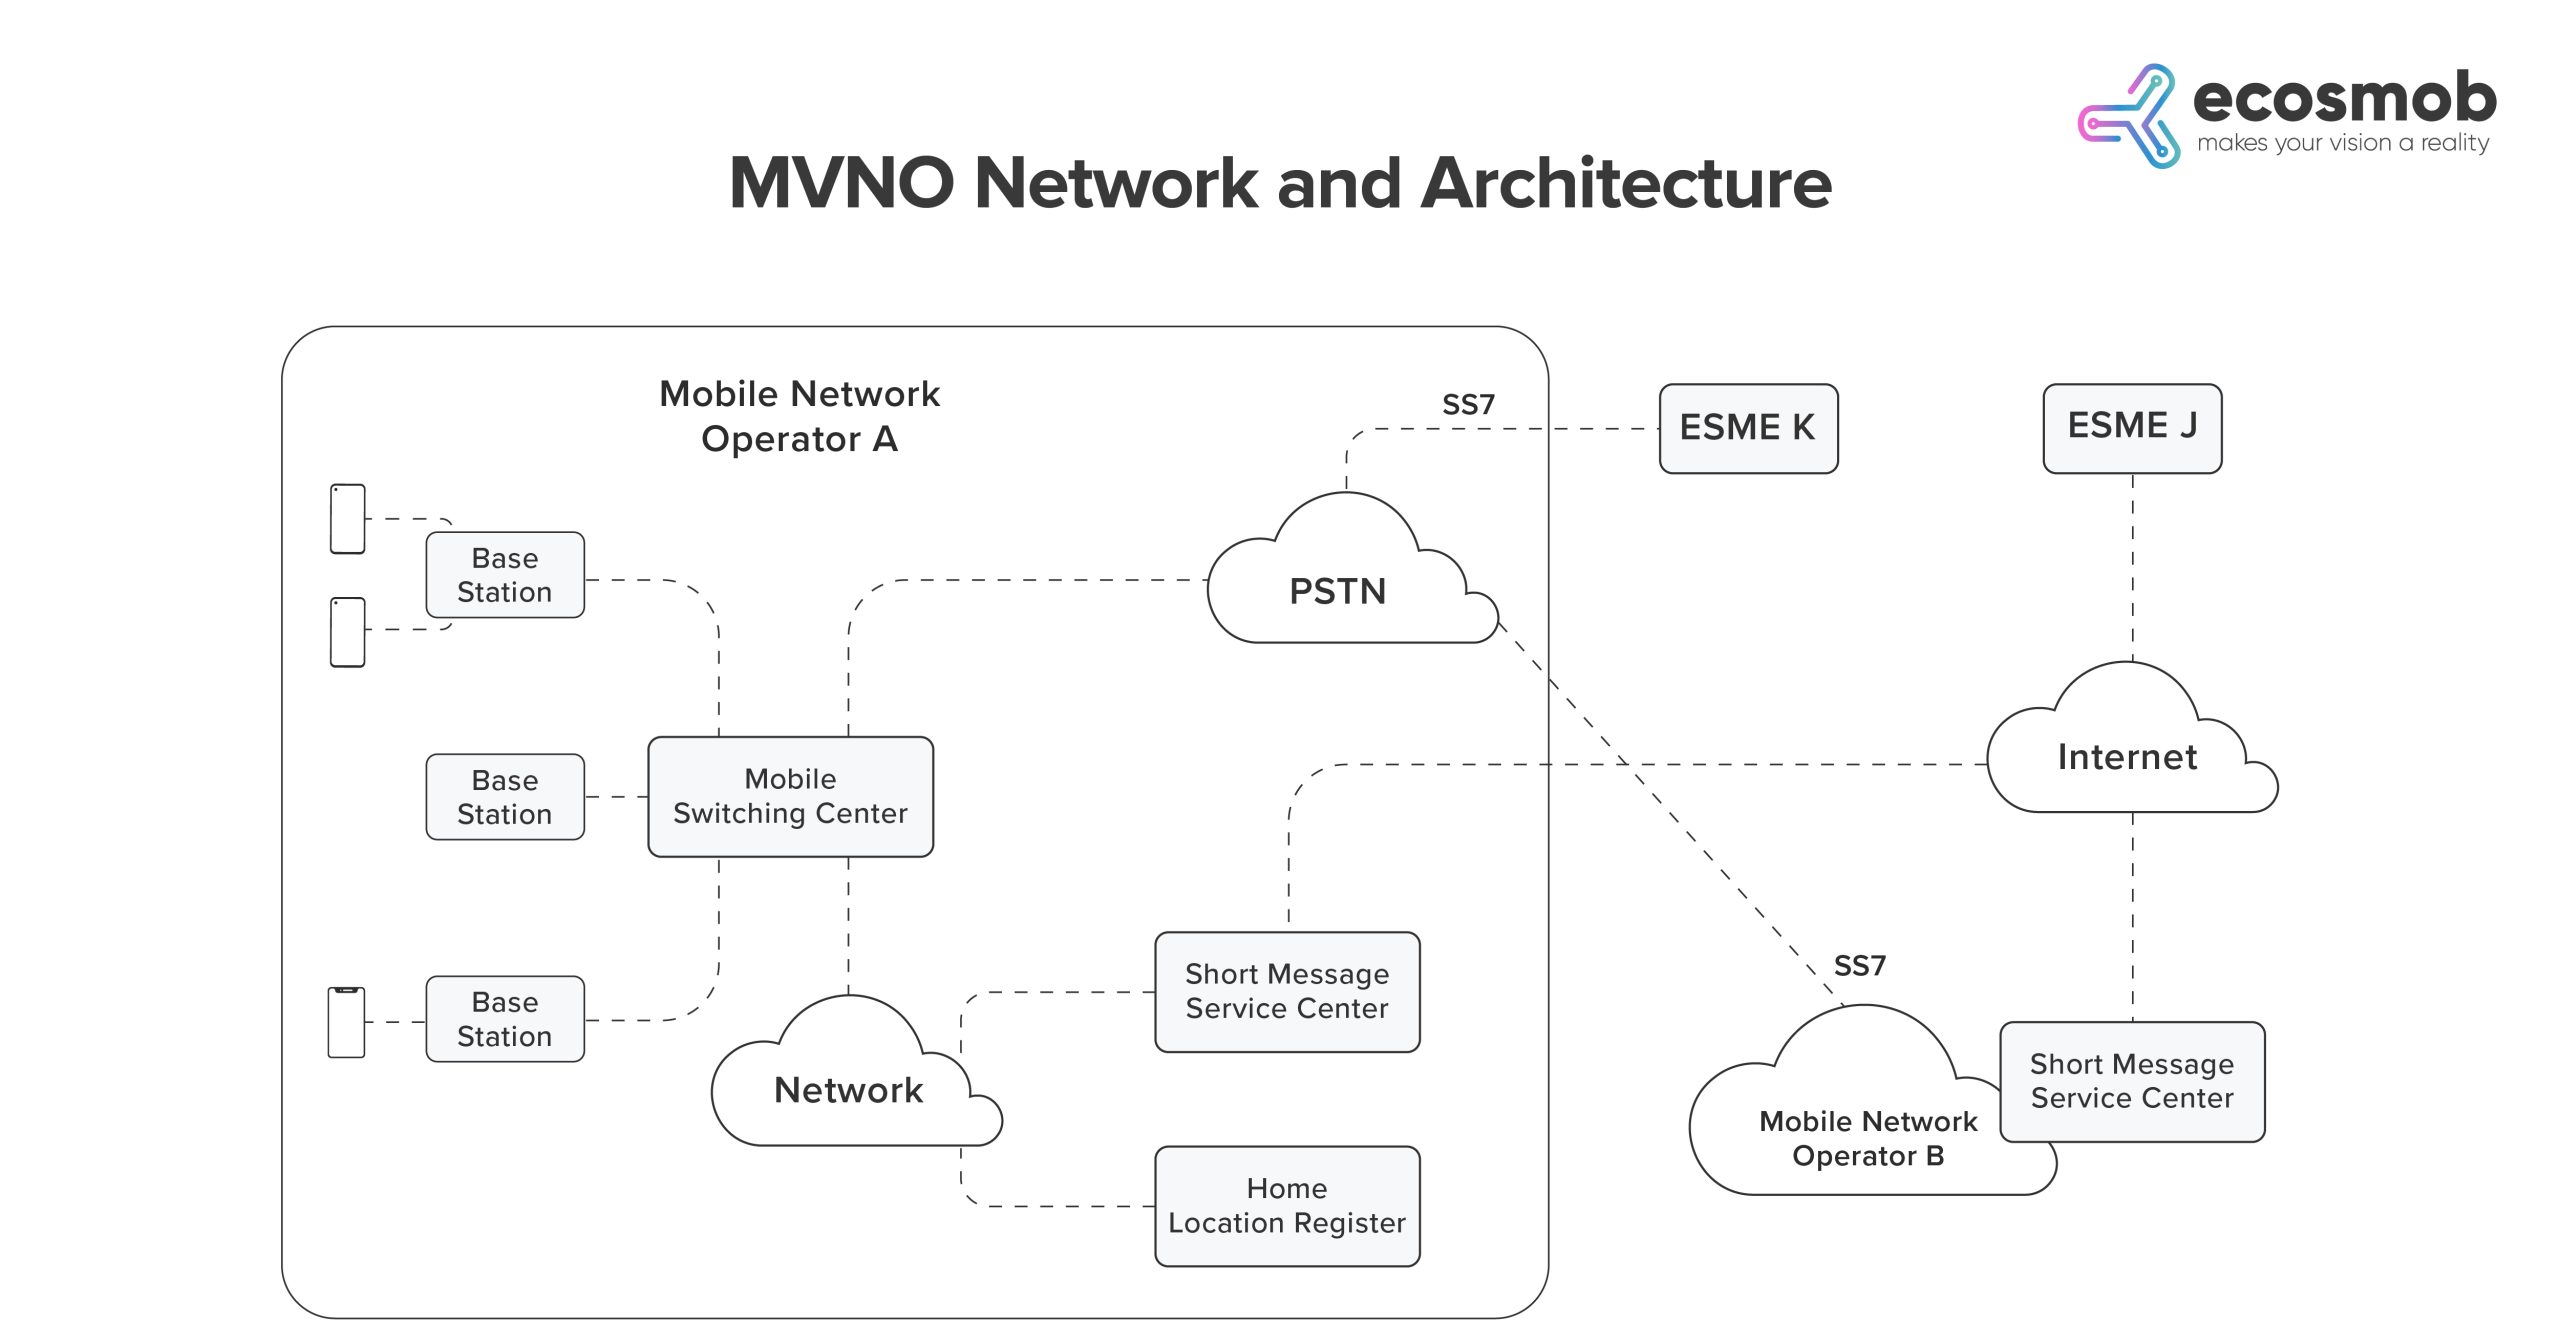 MVNO Network and Architecture